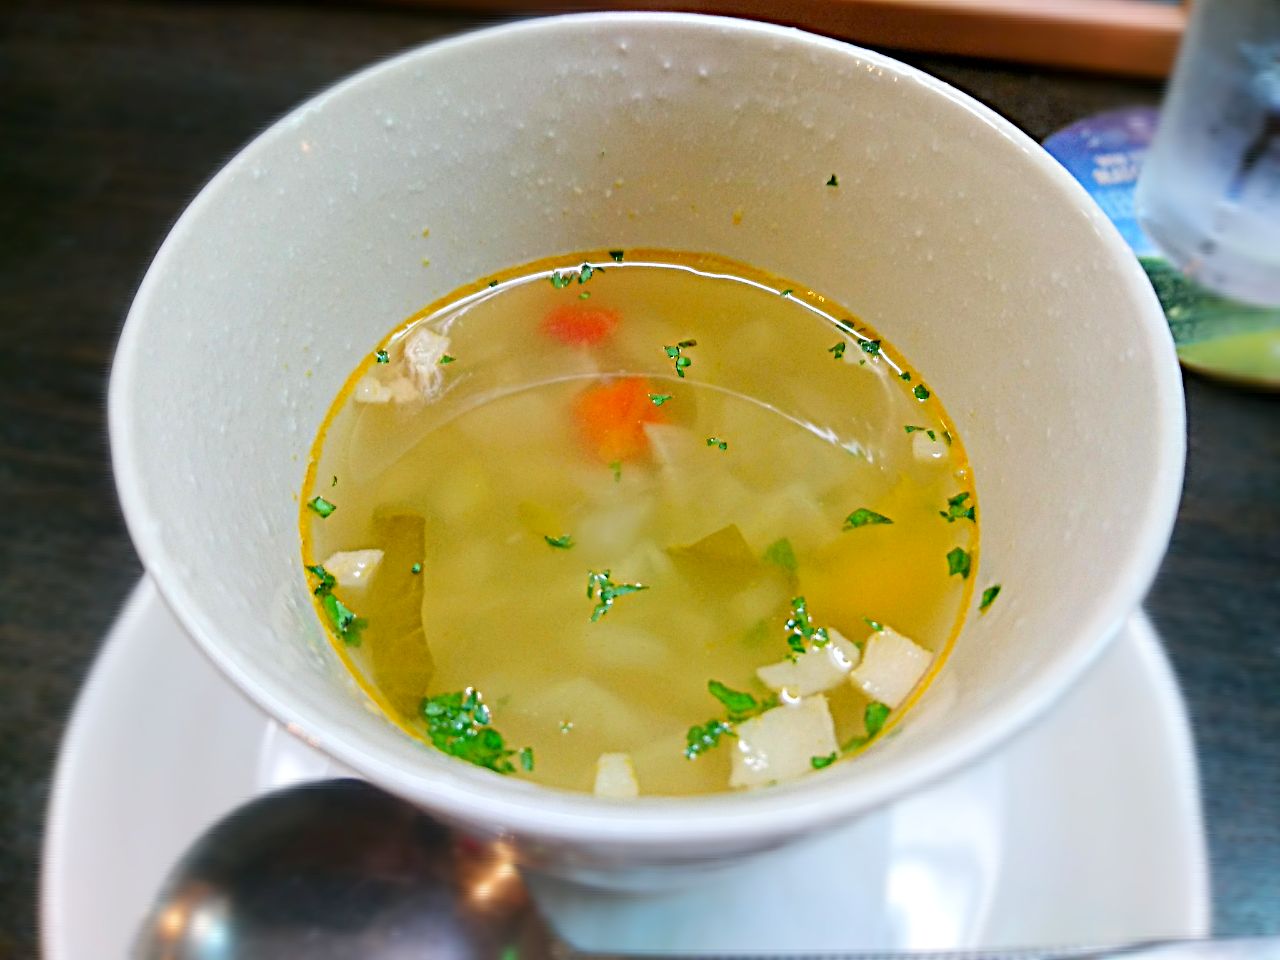 今日のランチはイタリアン 野菜スープ優しいお味でした Yoko Snapdish スナップディッシュ Id Hfqfga